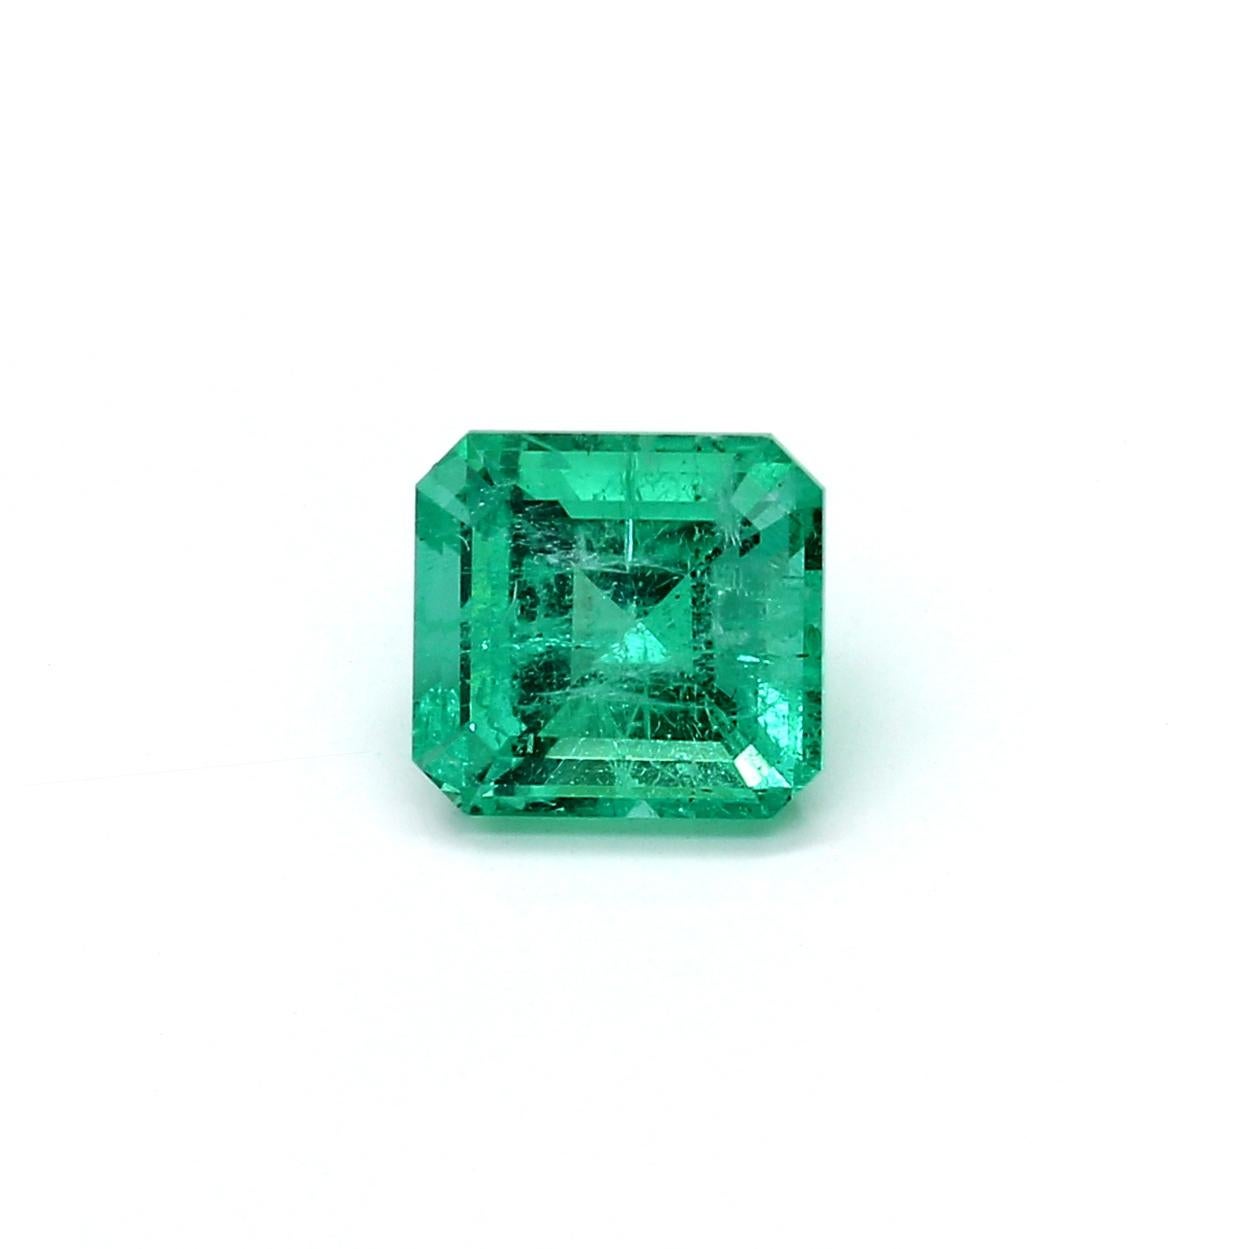 Une étonnante émeraude russe de 1,56 ct d'un vert vif qui permet aux bijoutiers de créer une pièce unique d'art portable.
Cette pierre précieuse de qualité exceptionnelle ferait un design de bijou sur mesure. Parfait pour une bague ou un